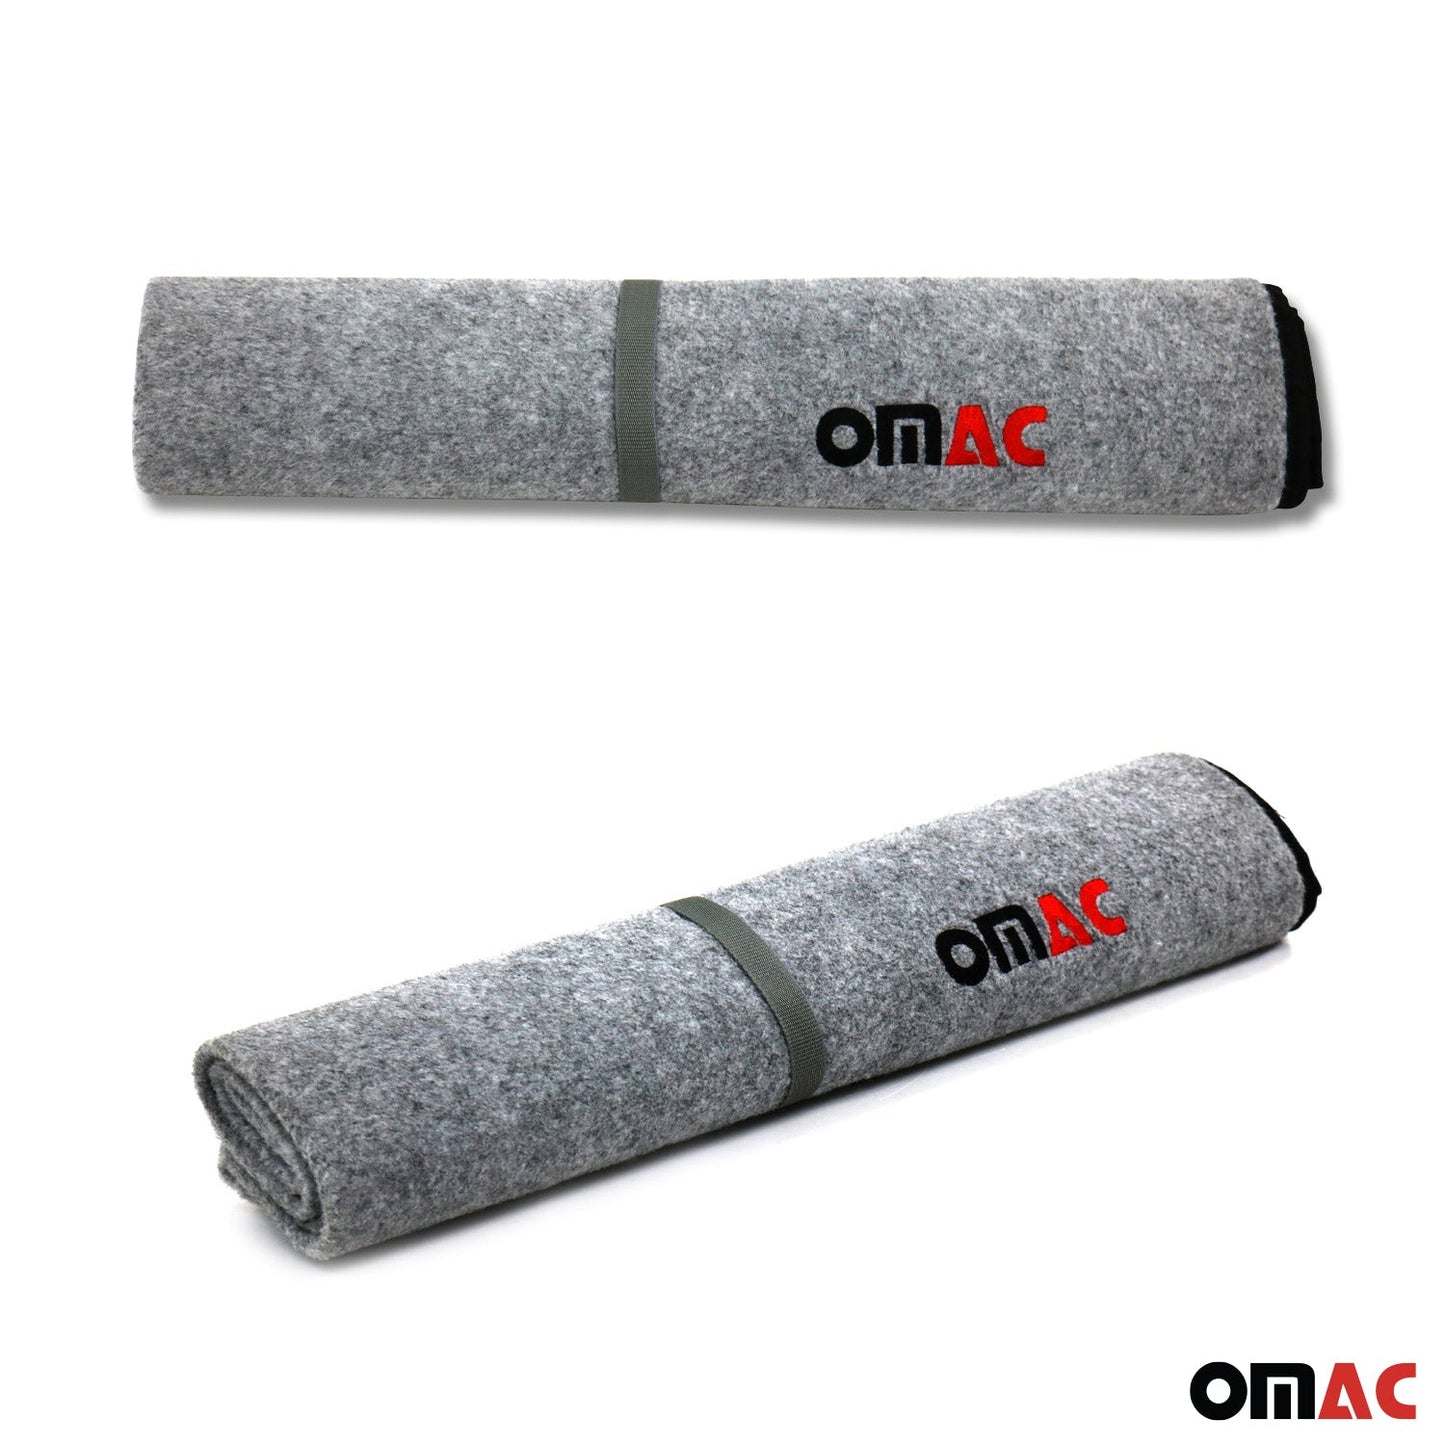 OMAC Rear Bumper Protector Trunk Mat Fabric Pet Cargo Liner For Truck Car Auto Grey 96RBP093G